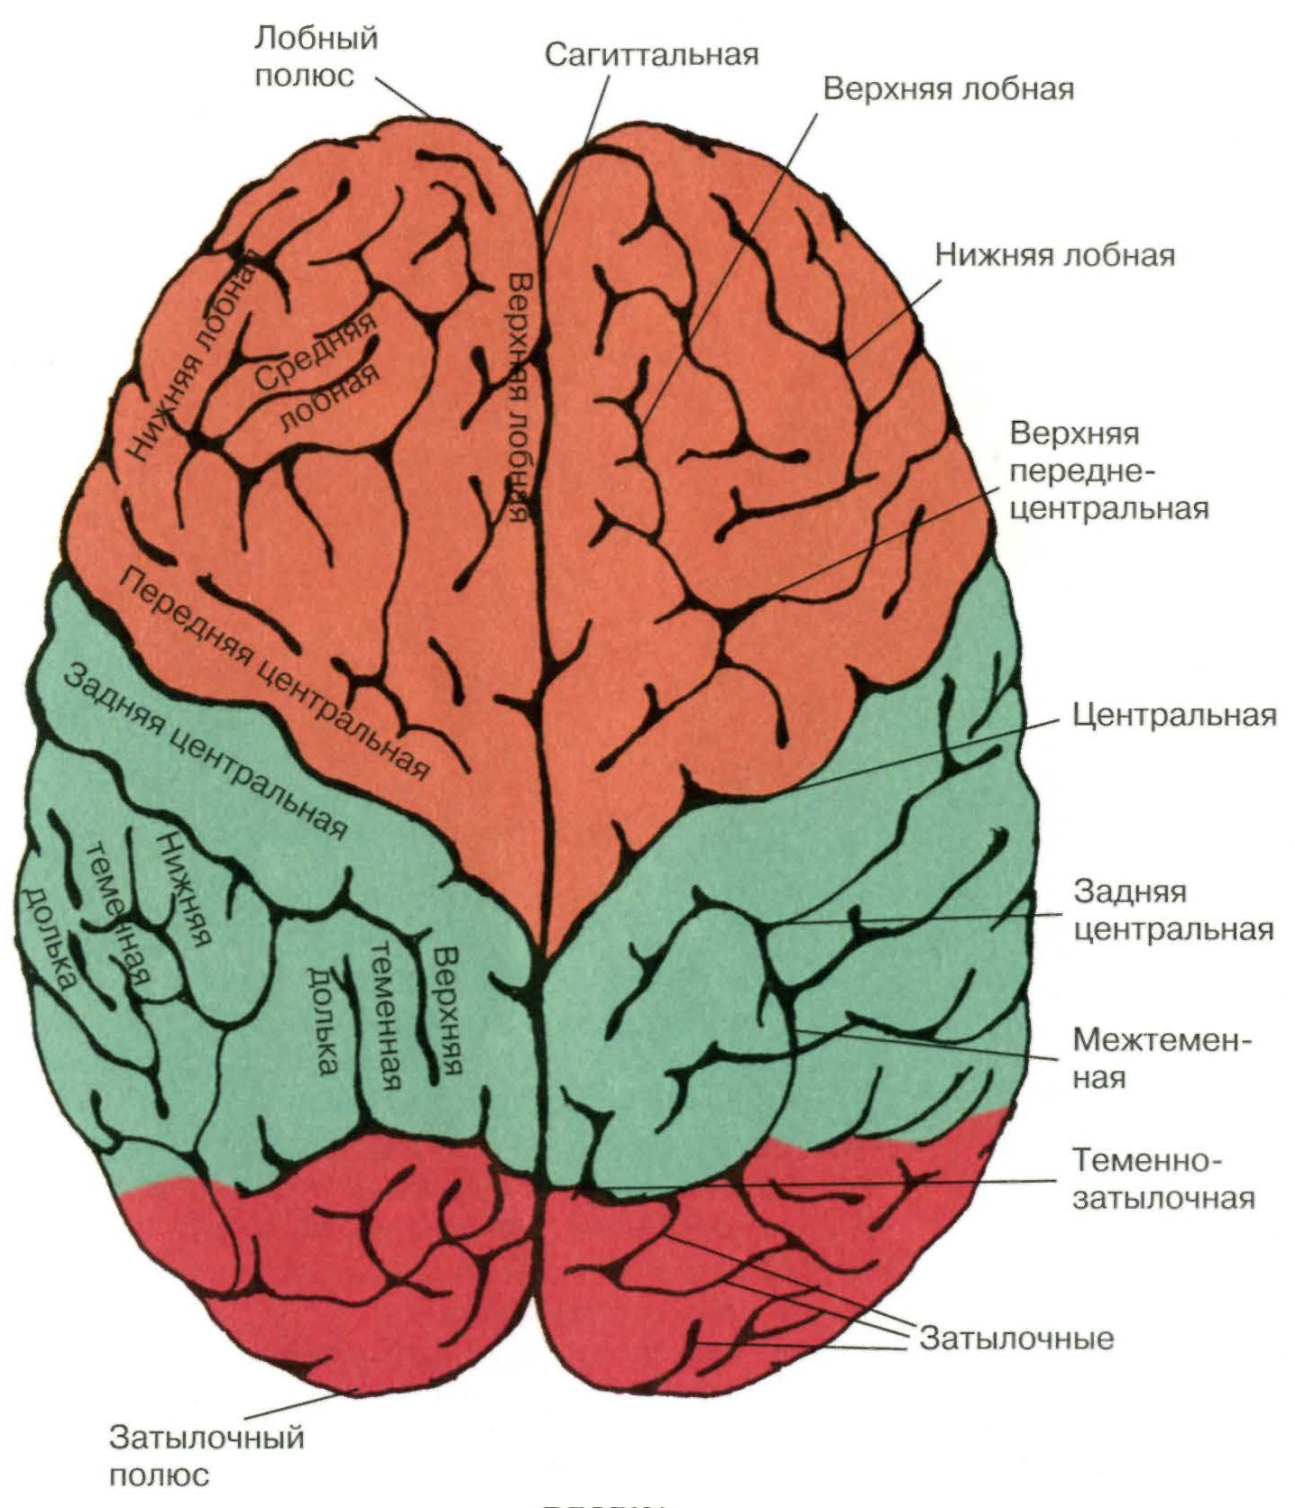 Складчатая поверхность головного мозга. Нижний теменной отдел левого полушария. Лобная дога большого мозга. Строение лобной доли головного мозга.